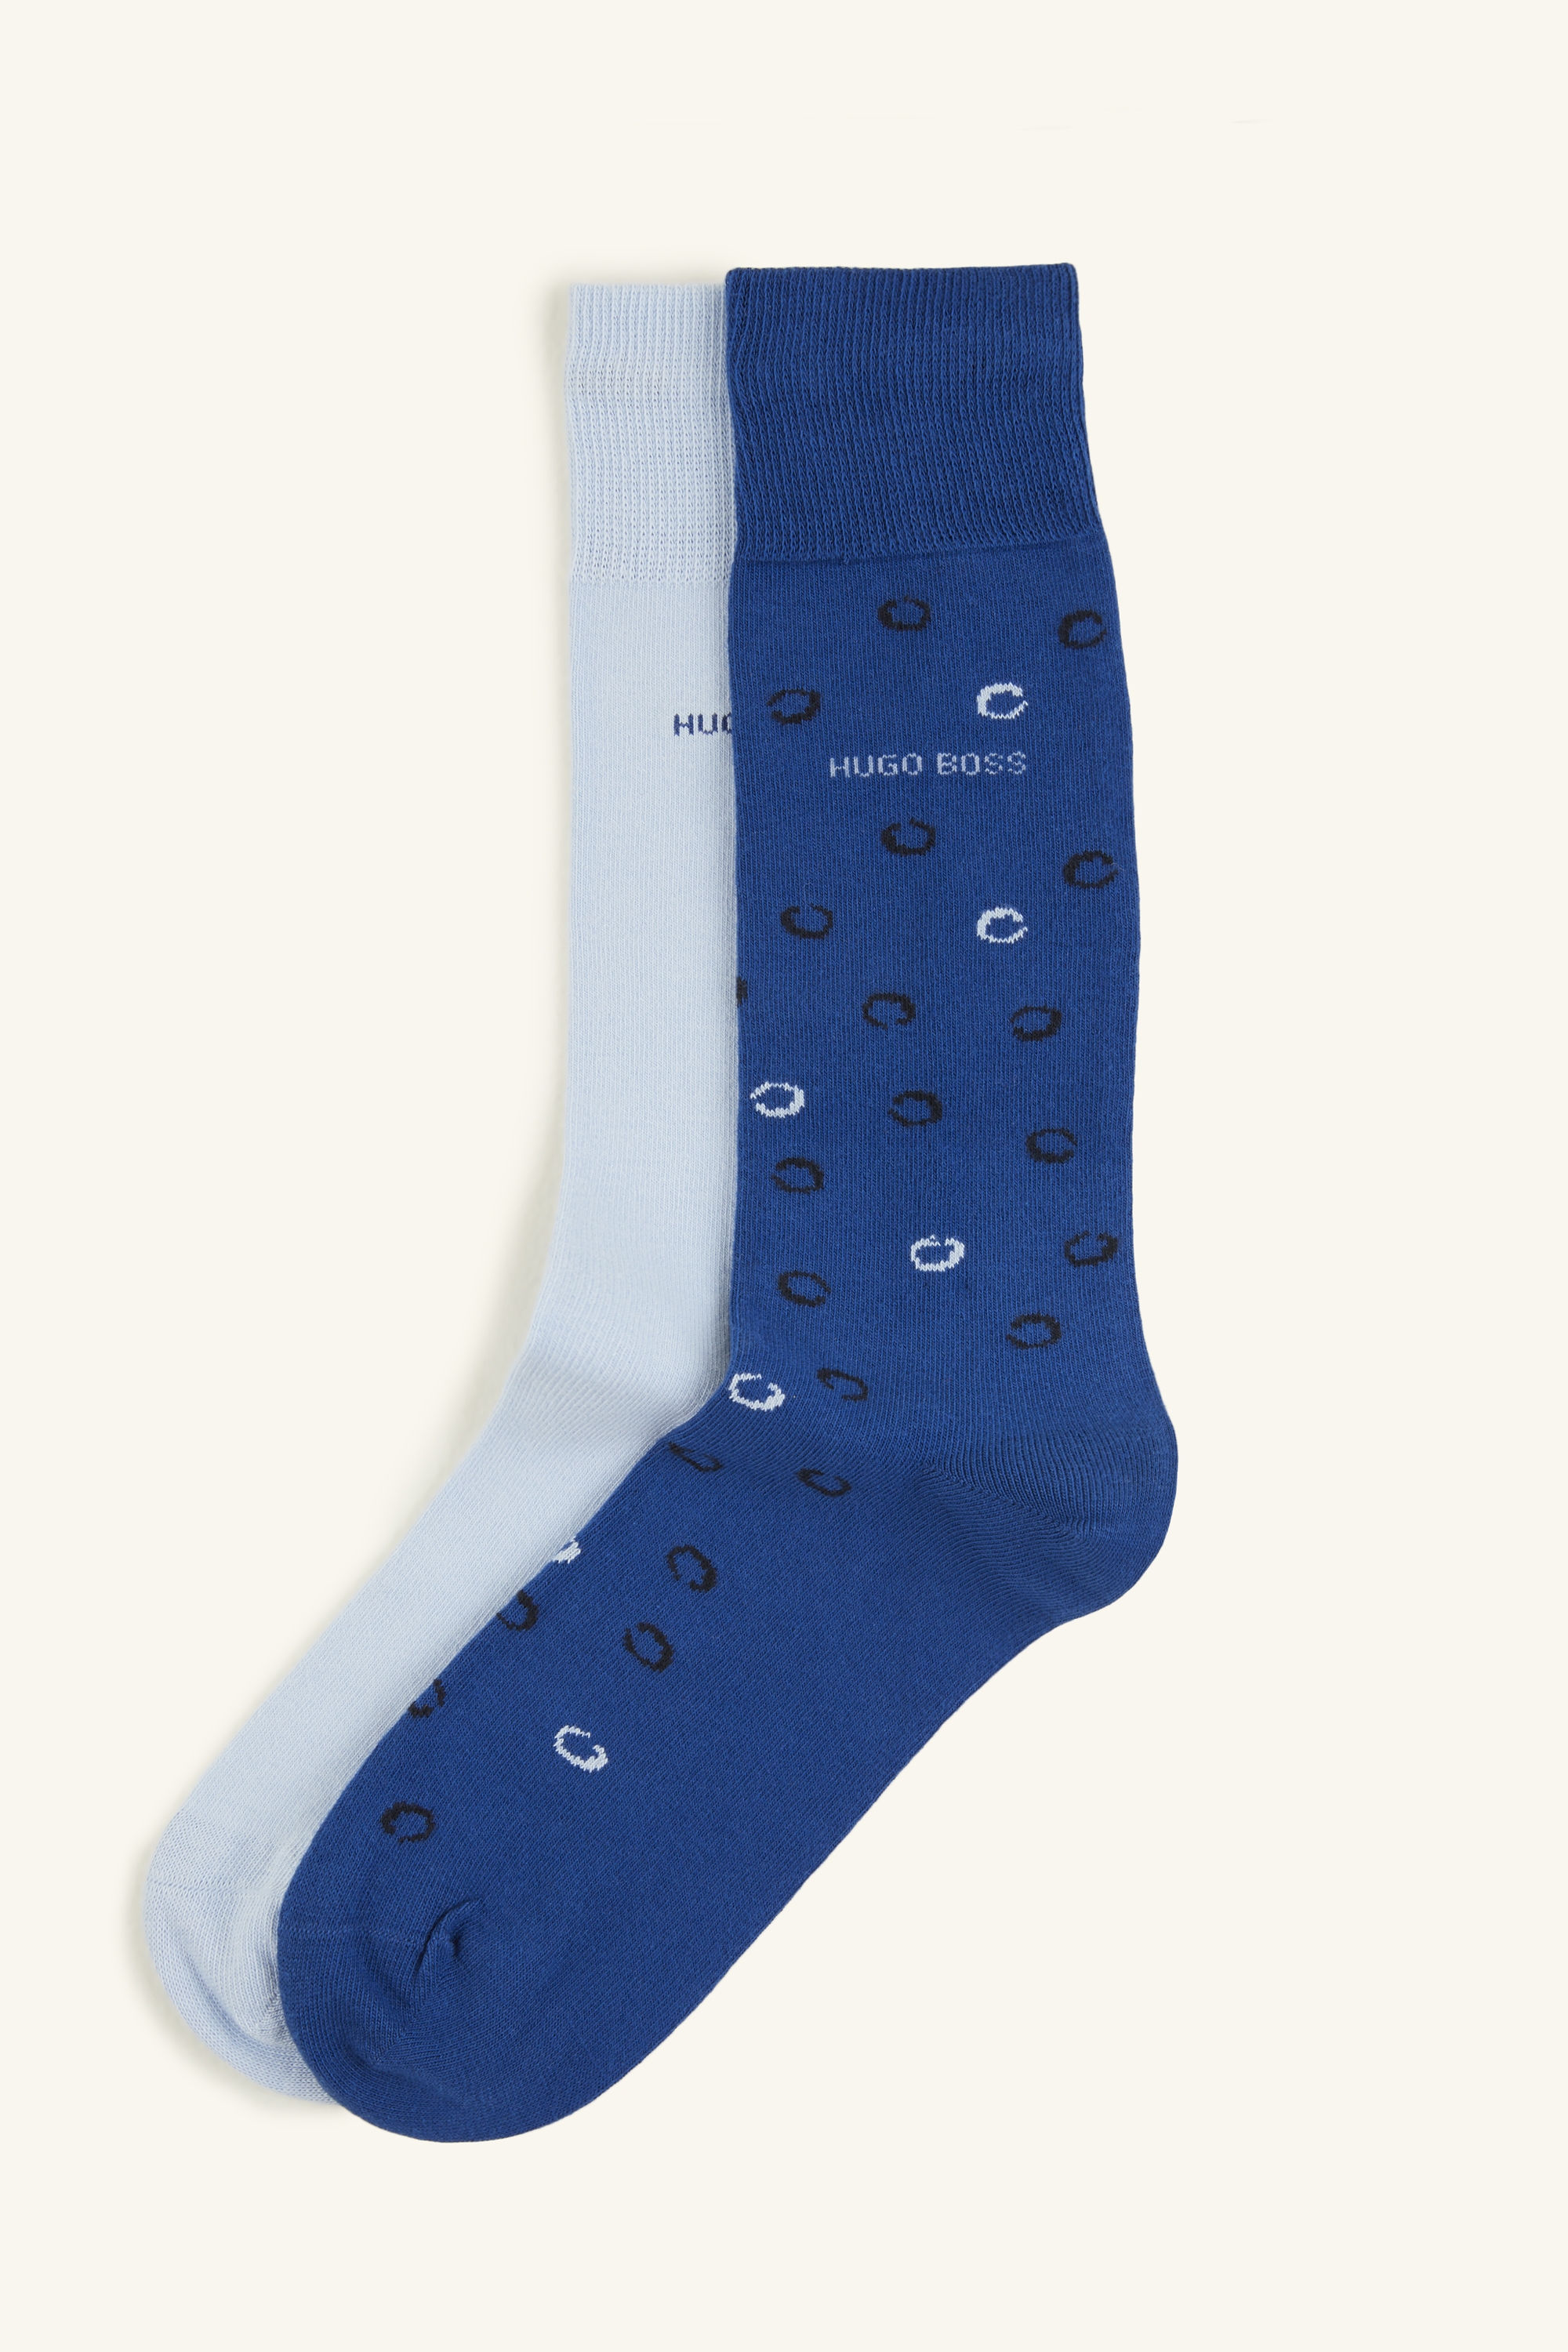 Hugo Boss 2 Pack Blue Design Sky Socks